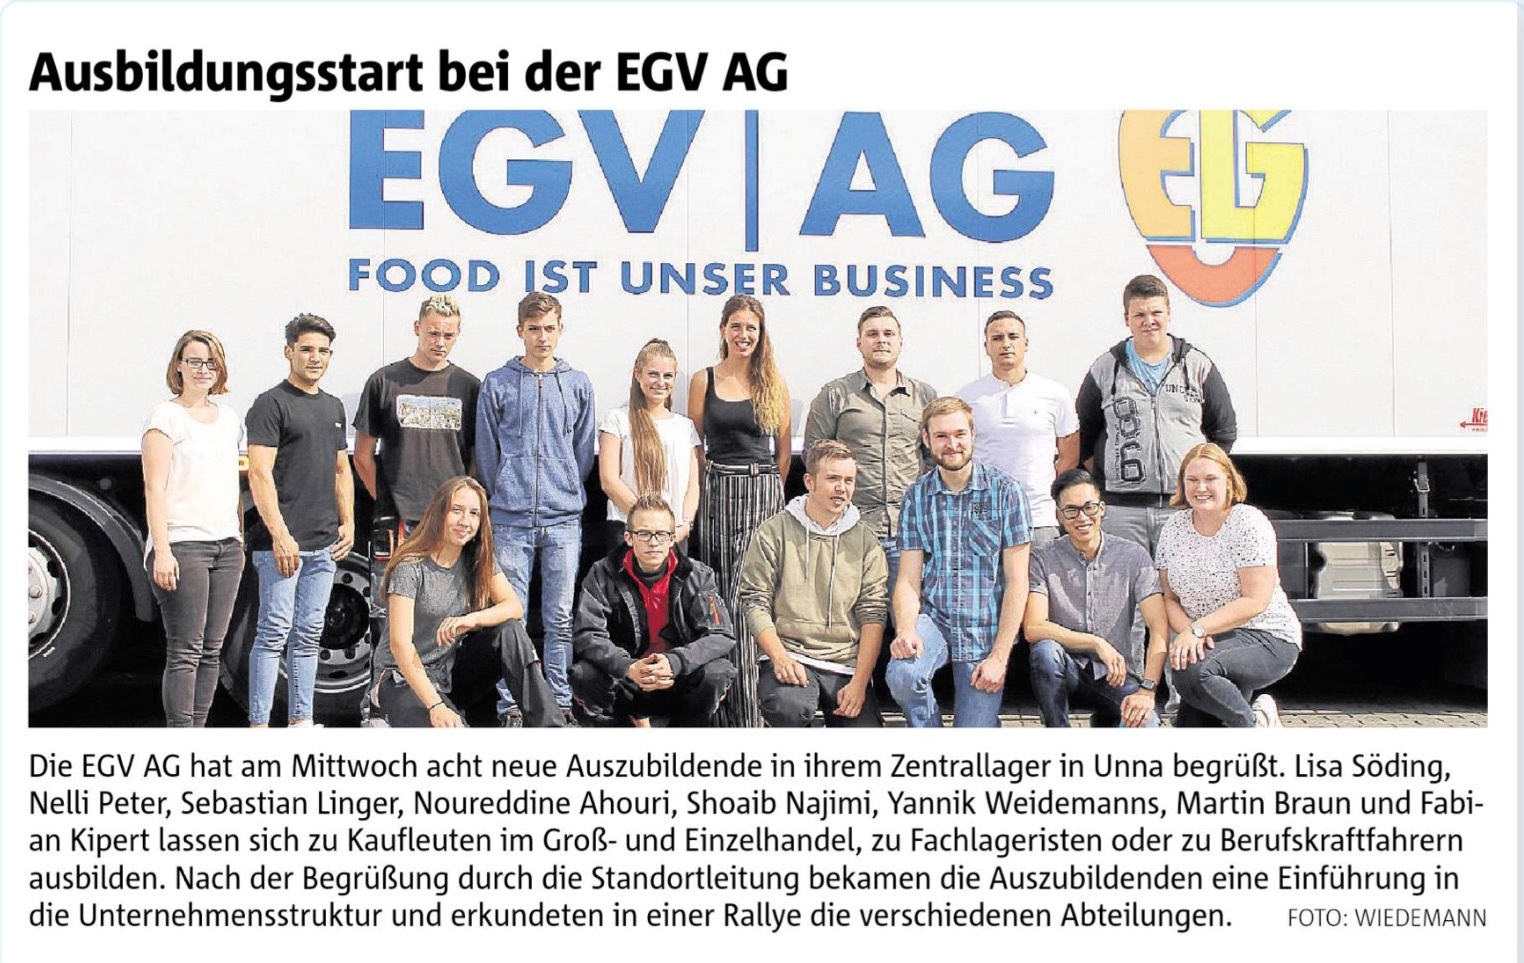 Ausbildungsstart bei der EGV AG: Ein Bild, das den Start der Ausbildung bei der EGV AG im Jahr 2018 zeigt, mit glücklichen Auszubildenden.